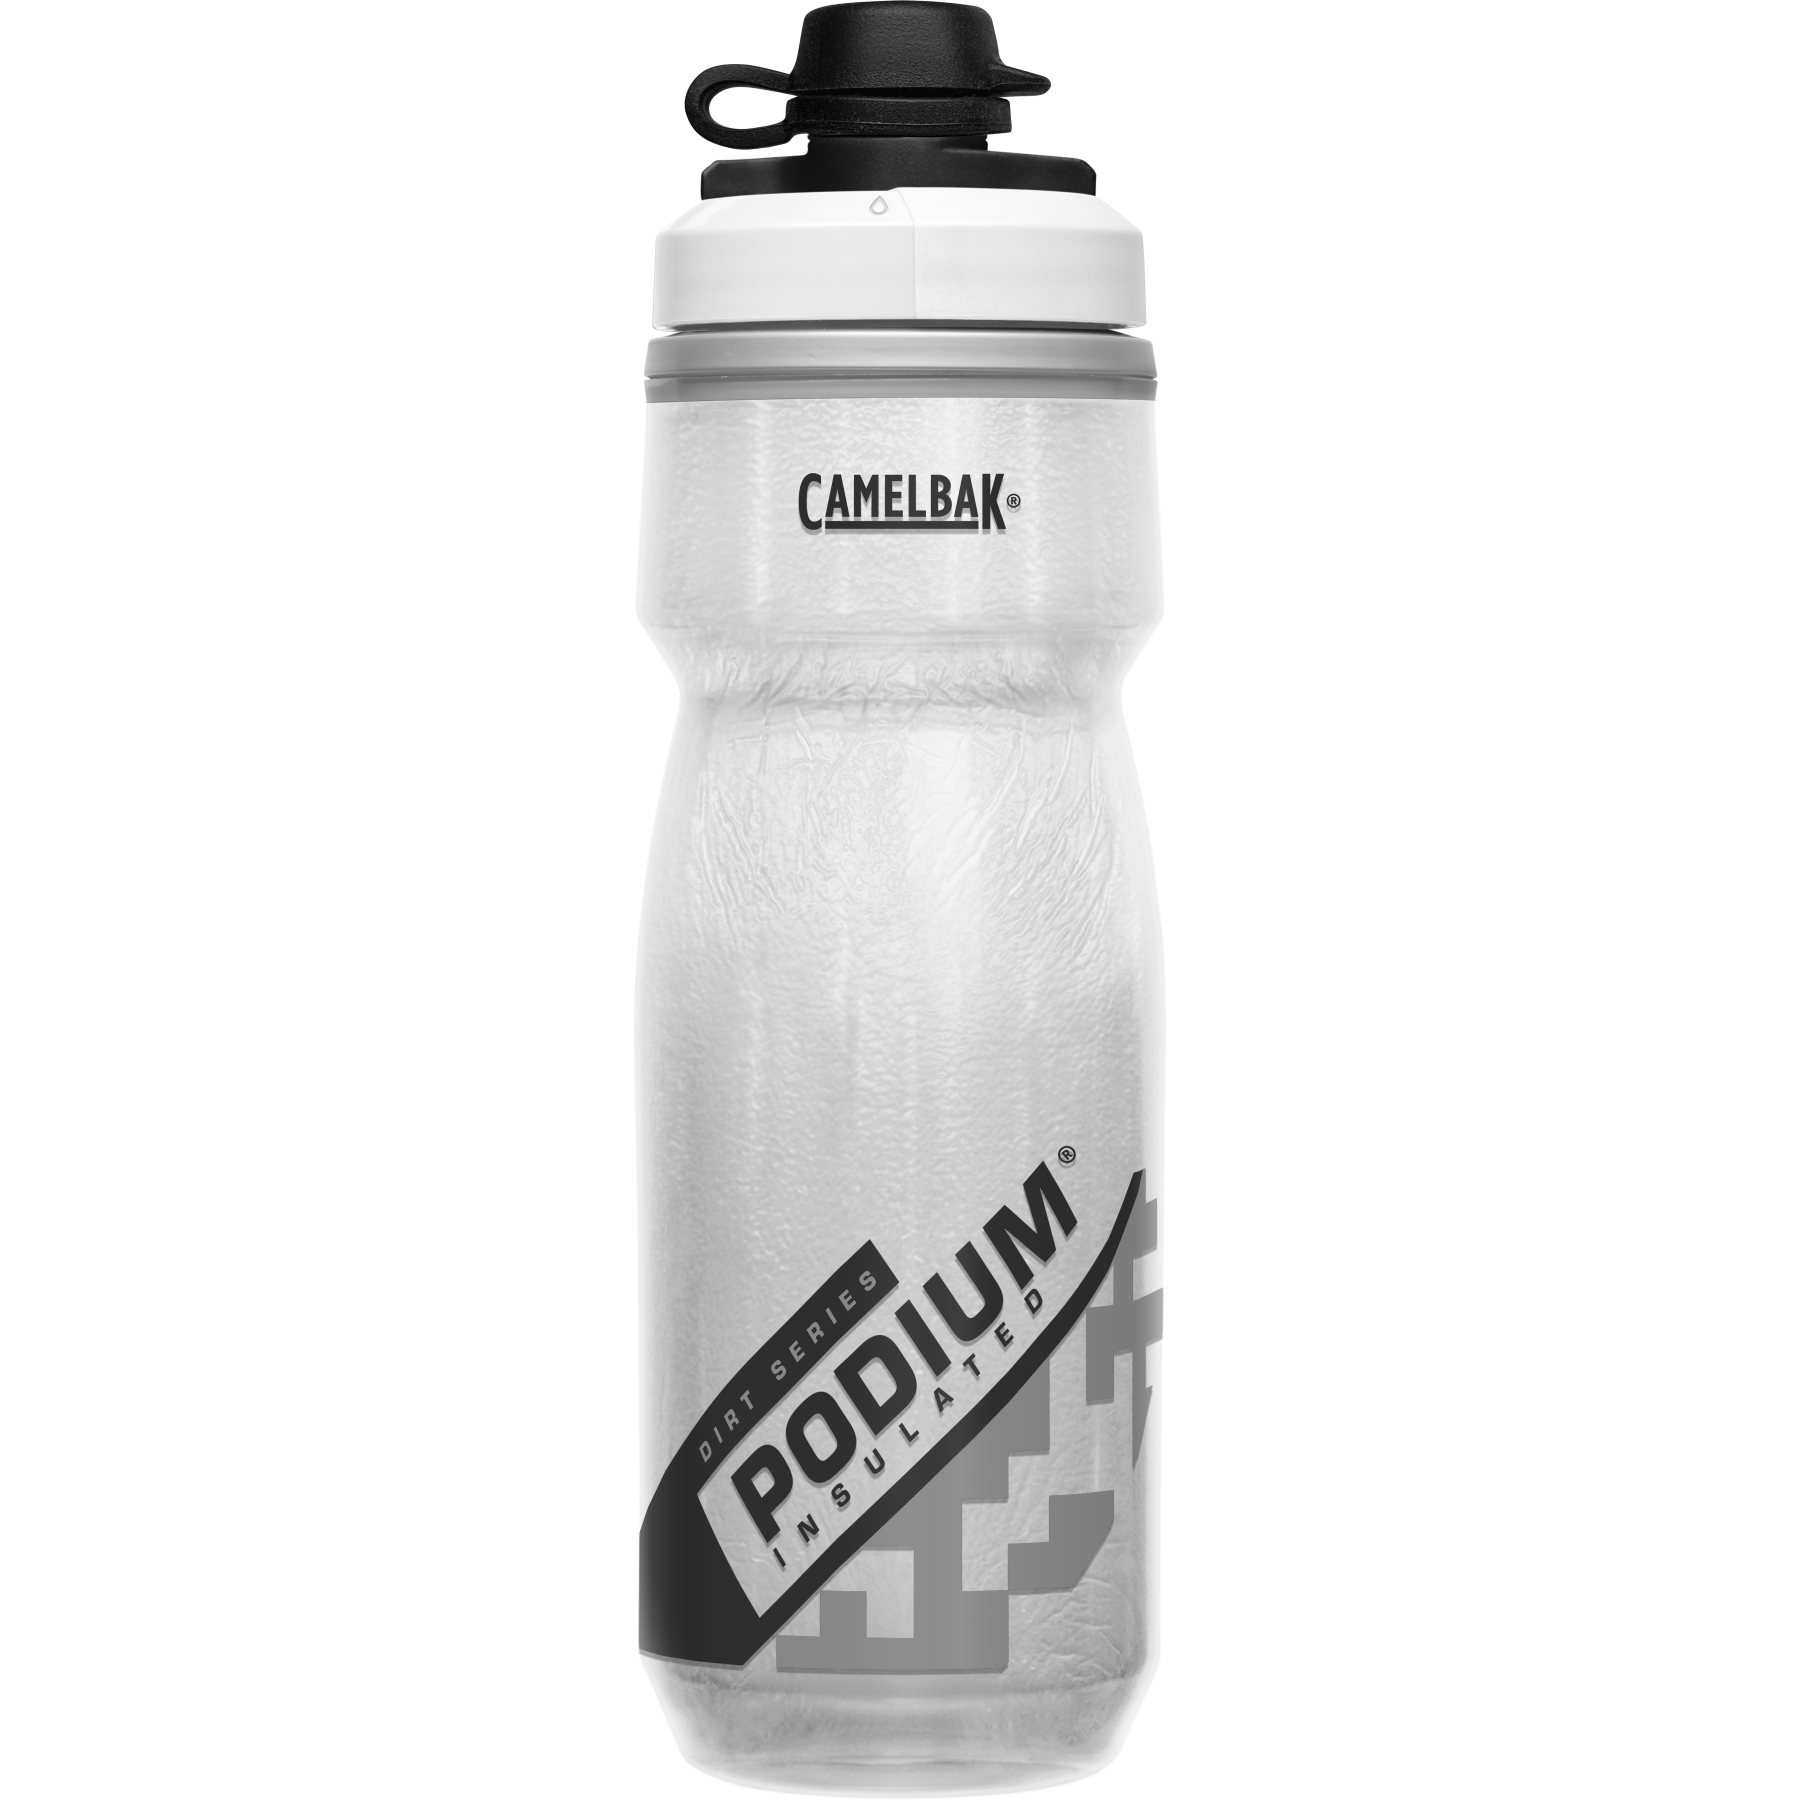 Produktbild von CamelBak Chill Podium Dirt Series Trinkflasche - 620ml - weiß